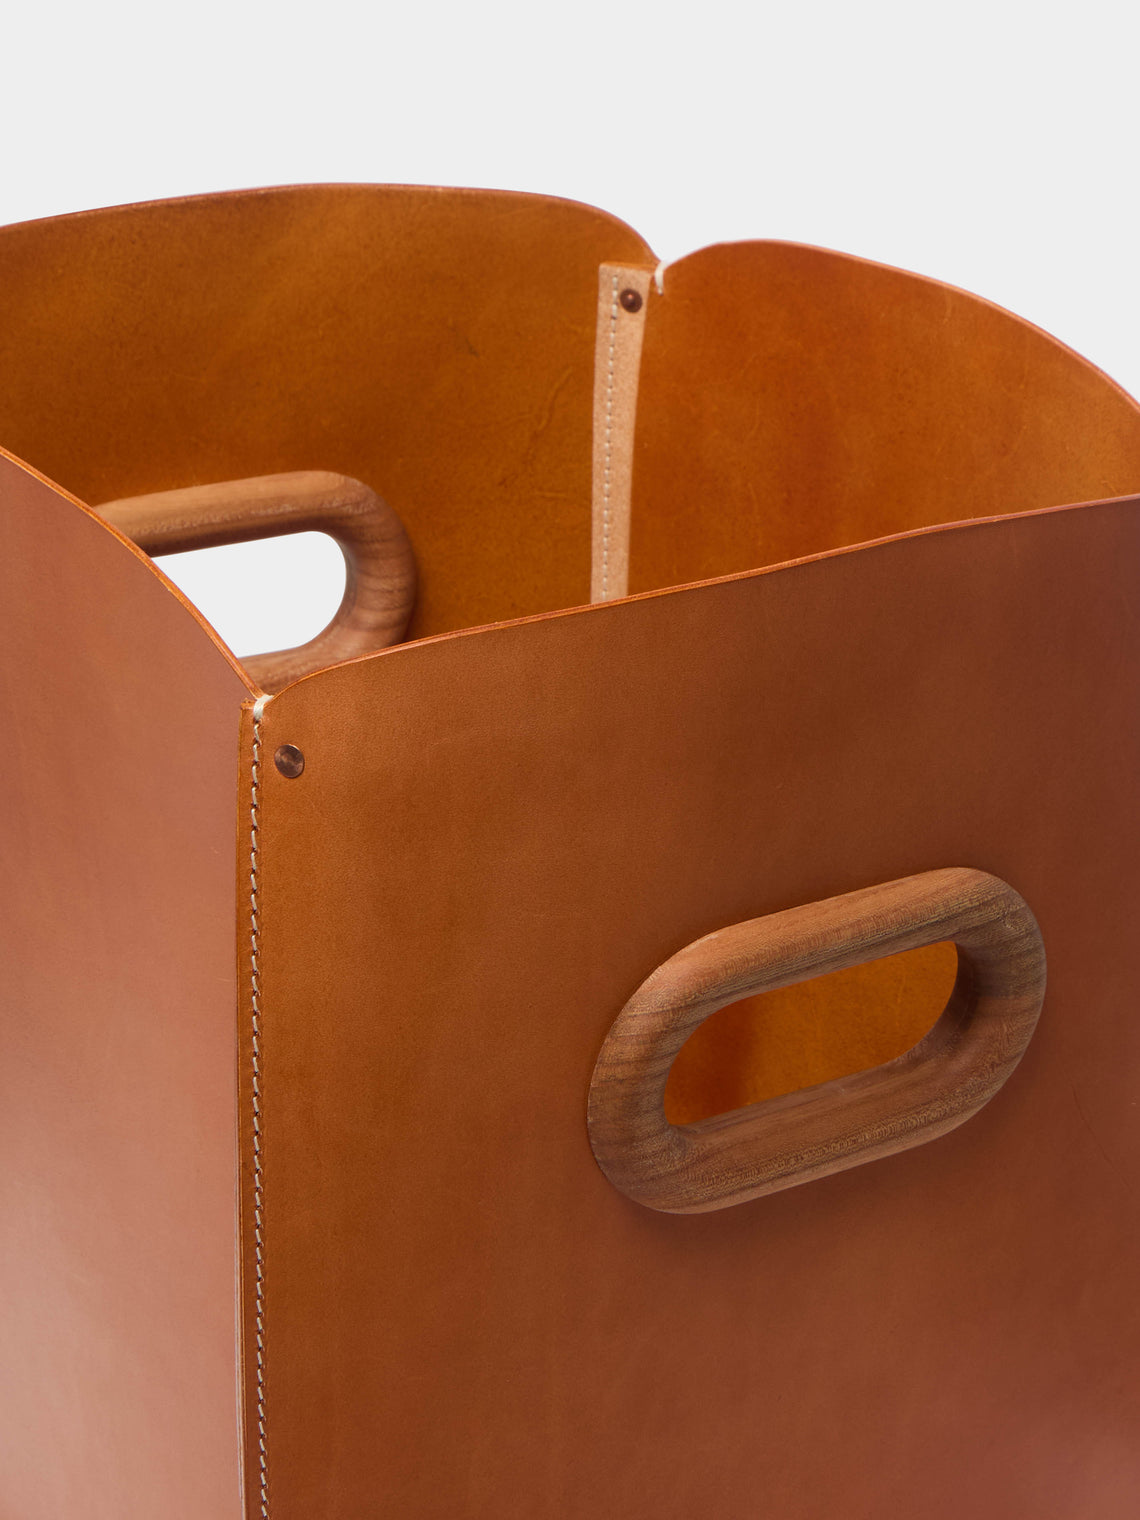 Otis Ingrams - Ample Leather Large Storage Basket -  - ABASK